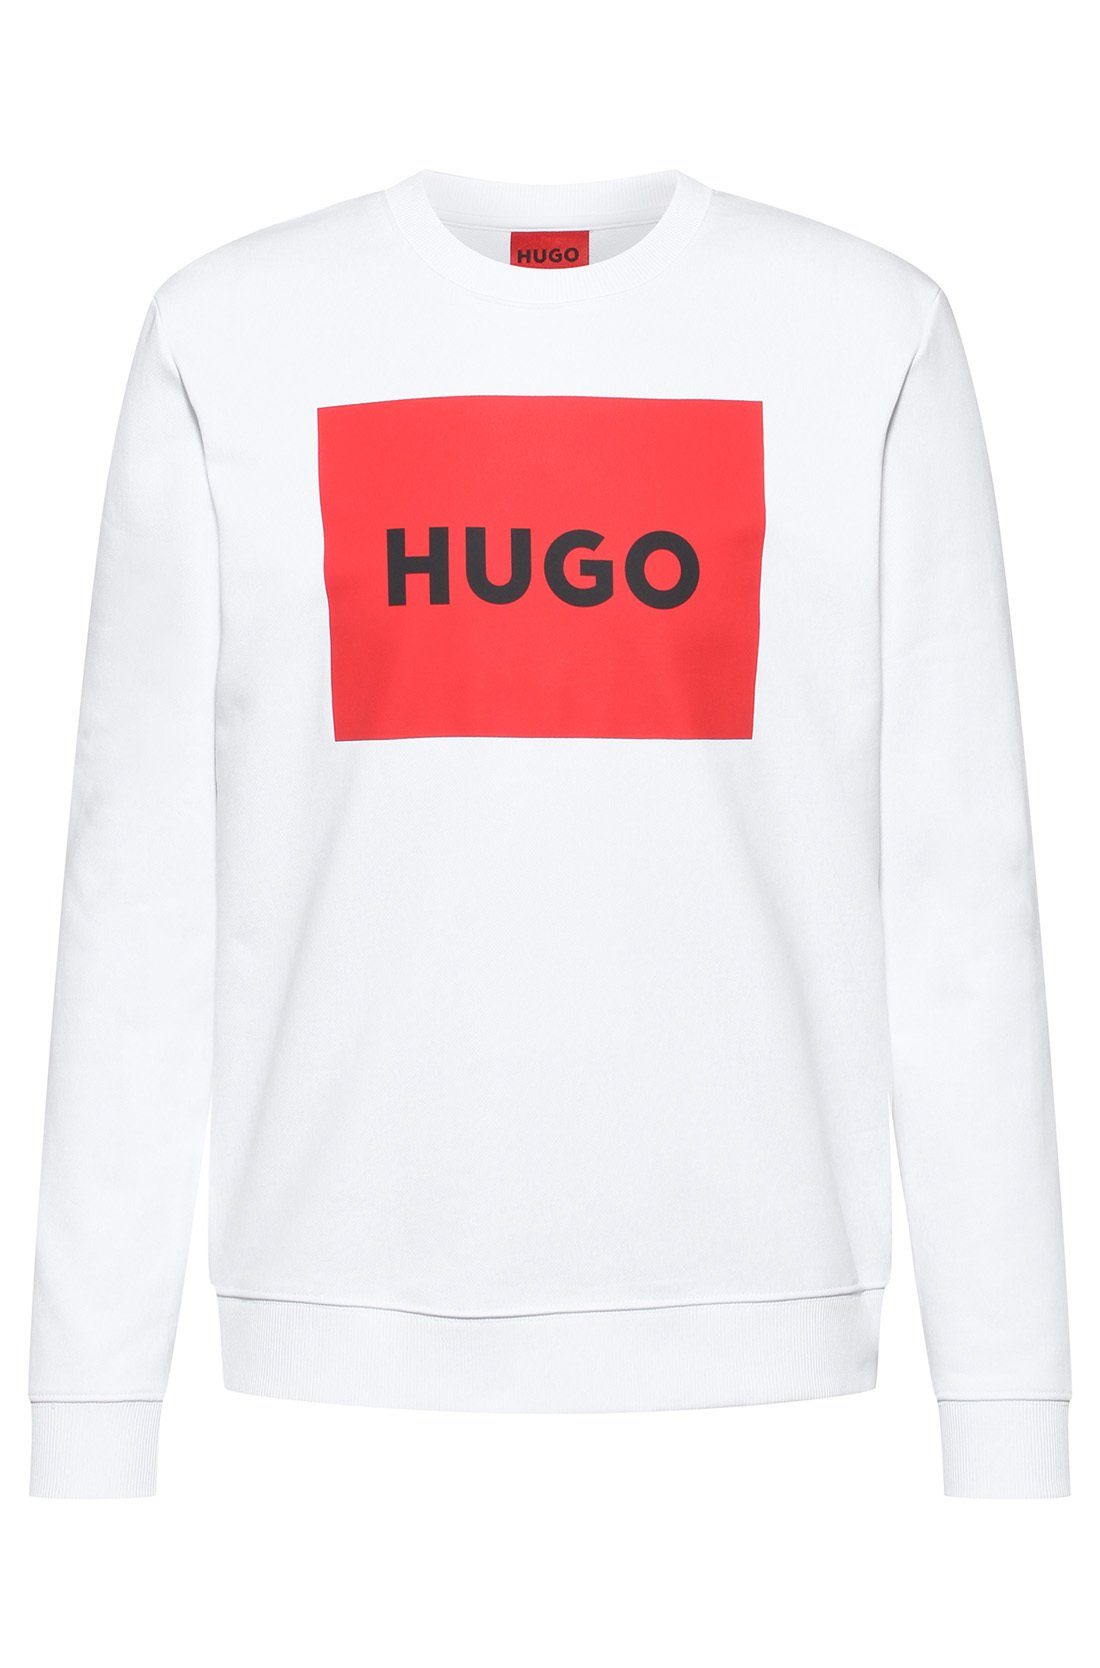 HUGO Sweatshirt Herren Sweater - Duragol222, Sweatshirt, Rundhals Weiß